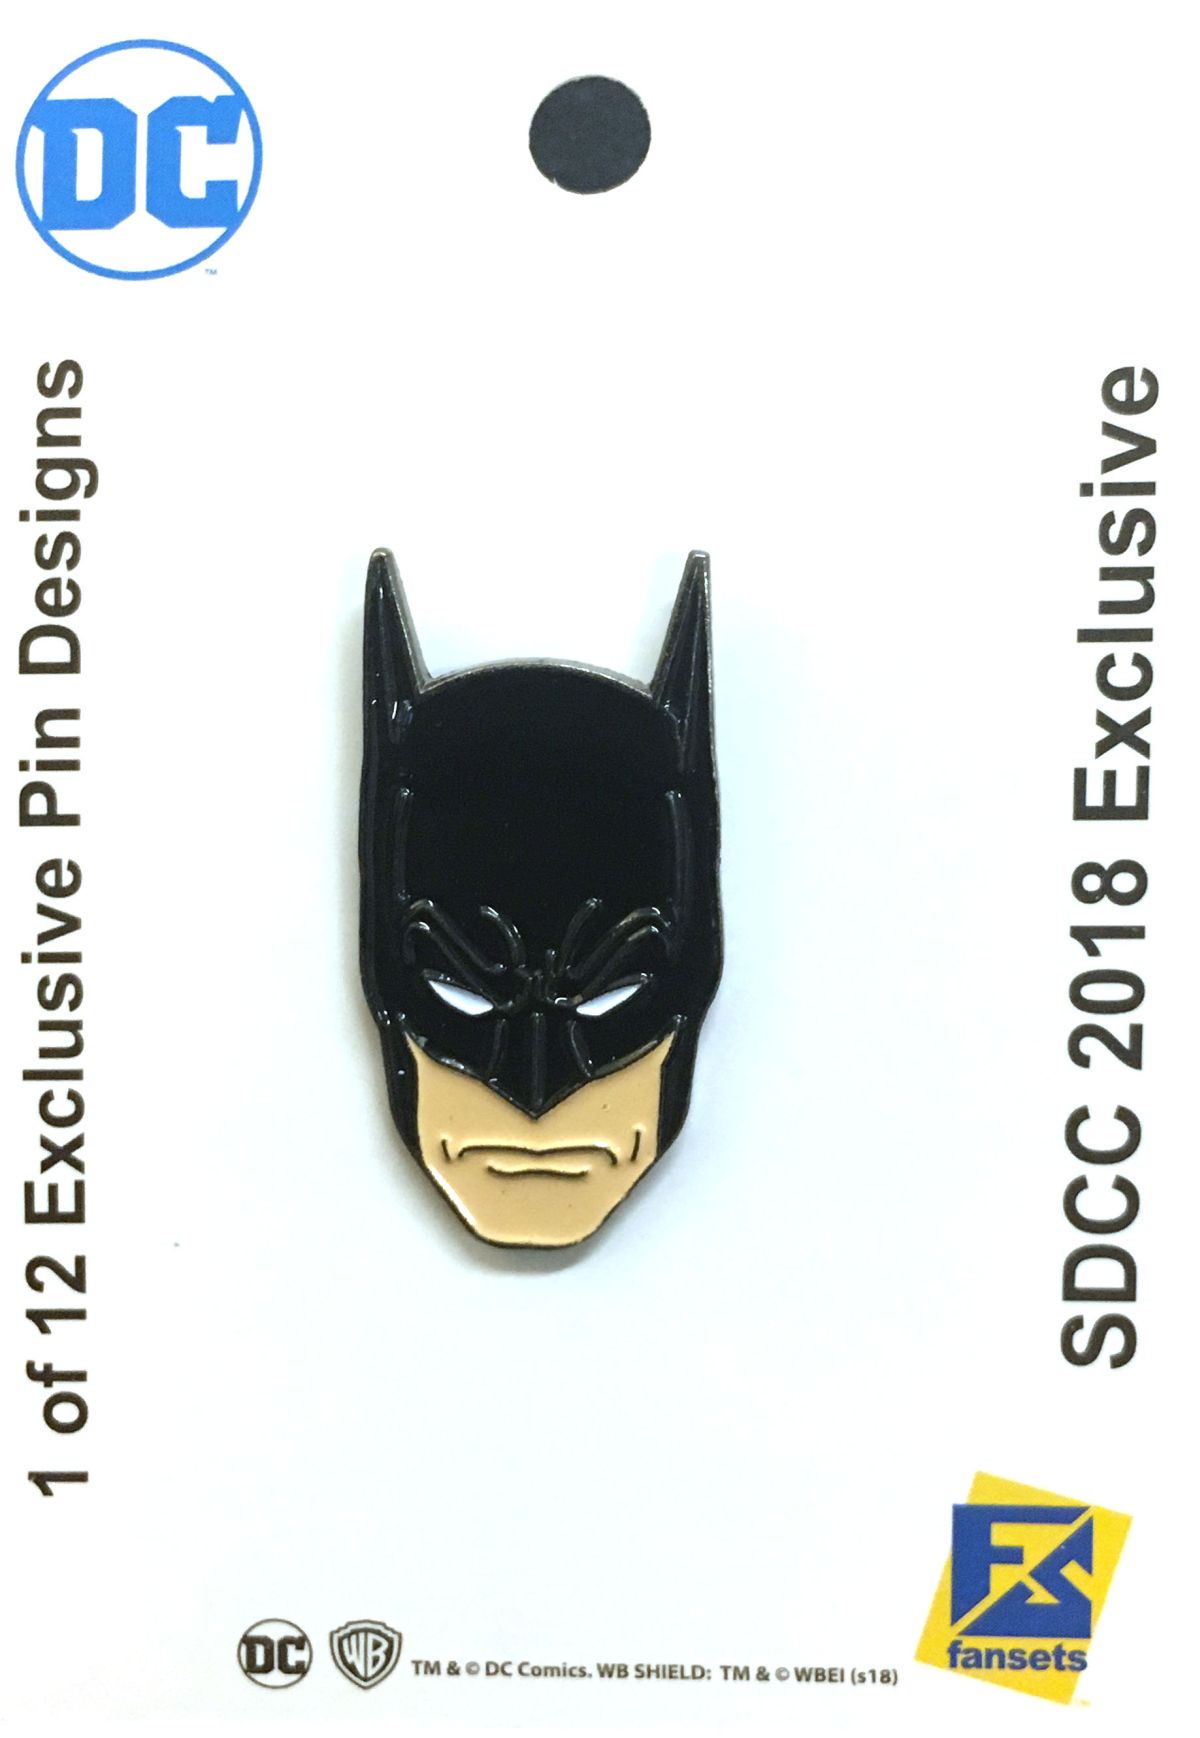 Pin Batman